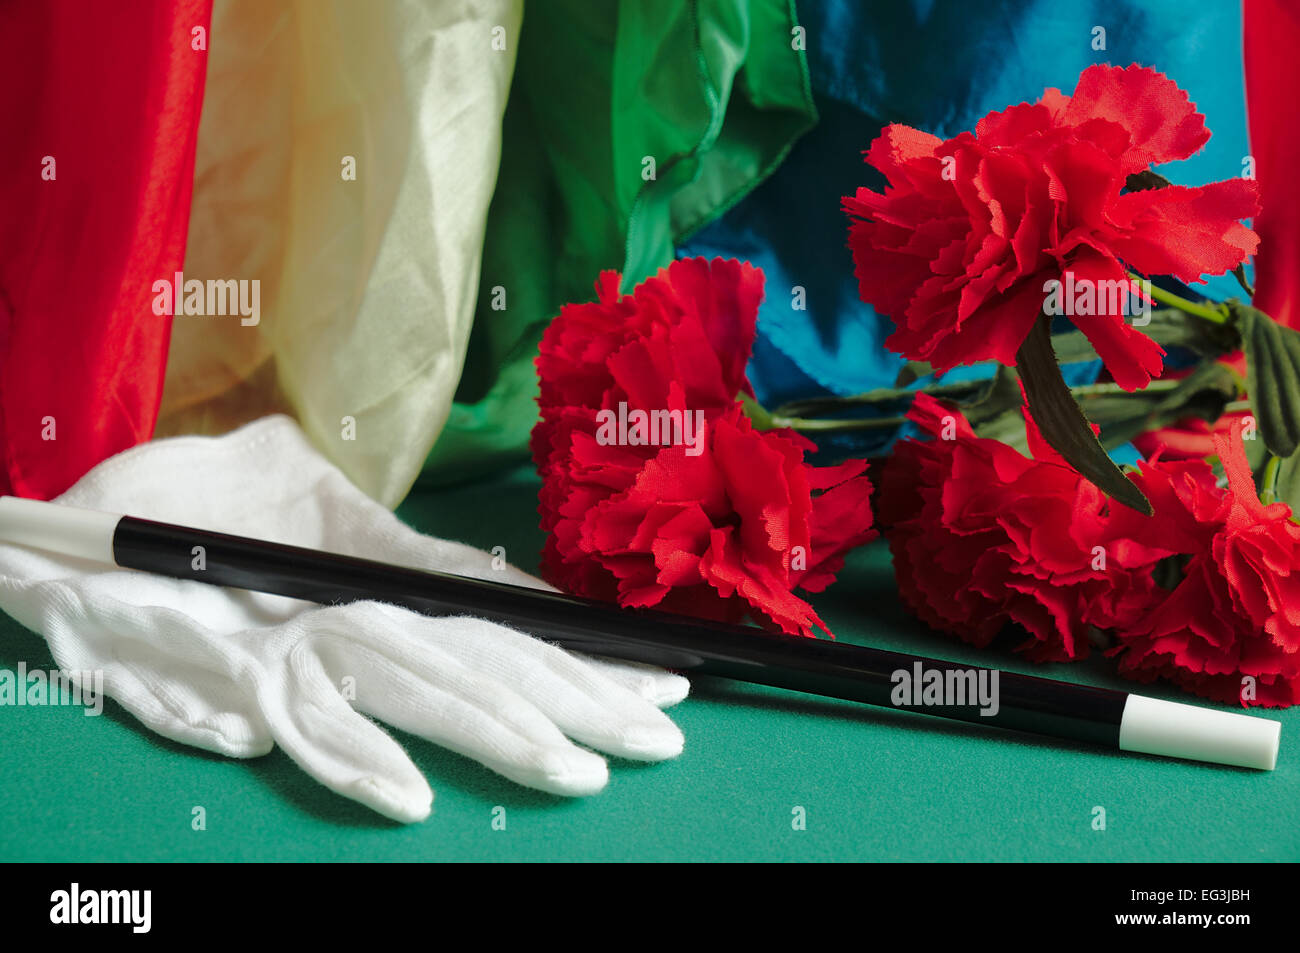 Accessoires de magie sur l'écran sur une table : gant, baguette magique, mouchoirs, et de fleurs. Magiciens et illusionnistes Banque D'Images